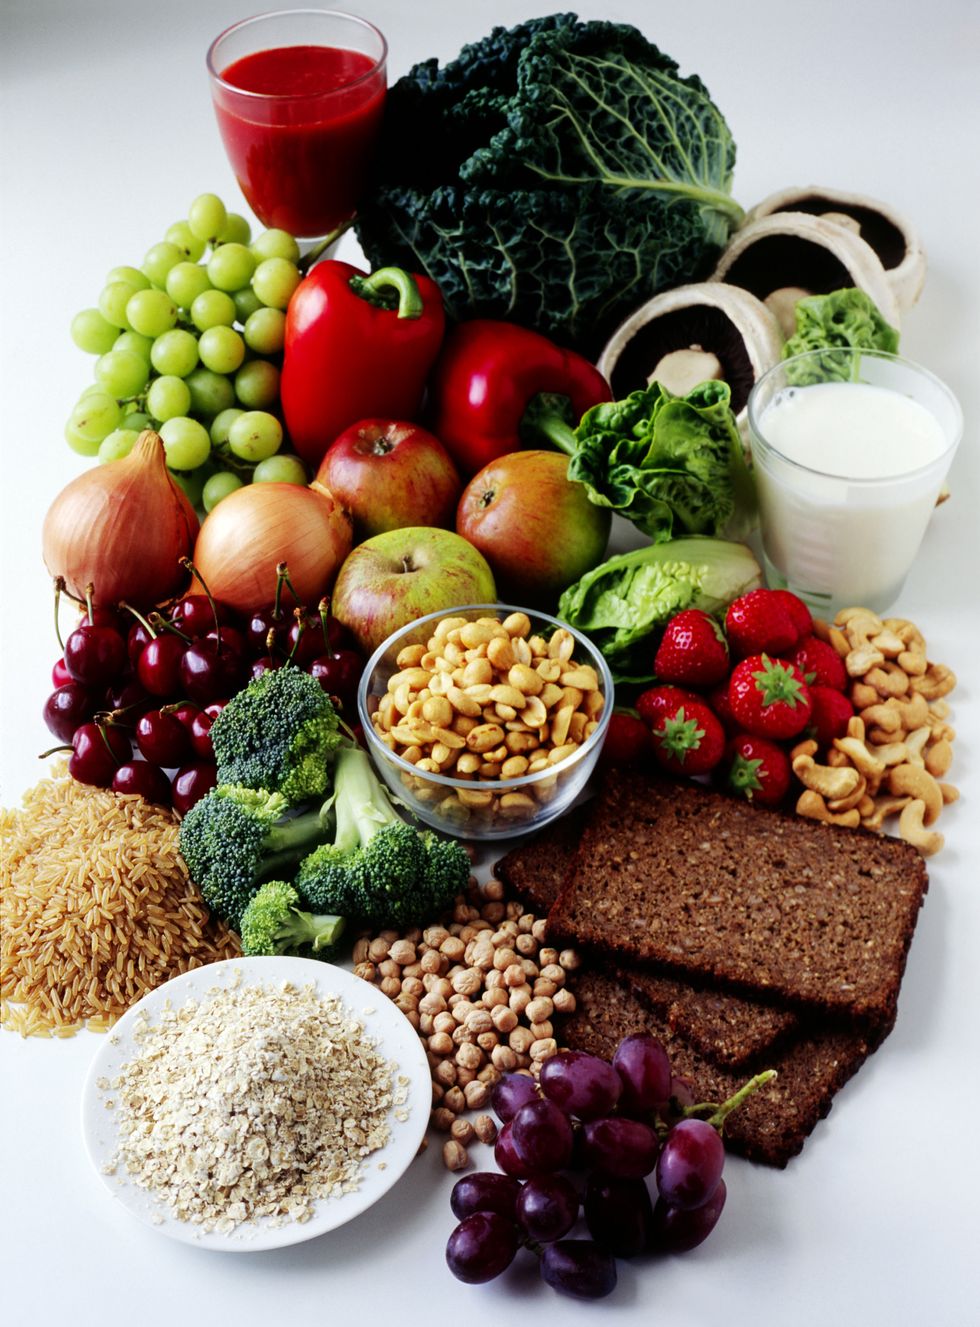 Food, Produce, Ingredient, Serveware, Tableware, Natural foods, Food group, Vegan nutrition, Bowl, Dishware, 